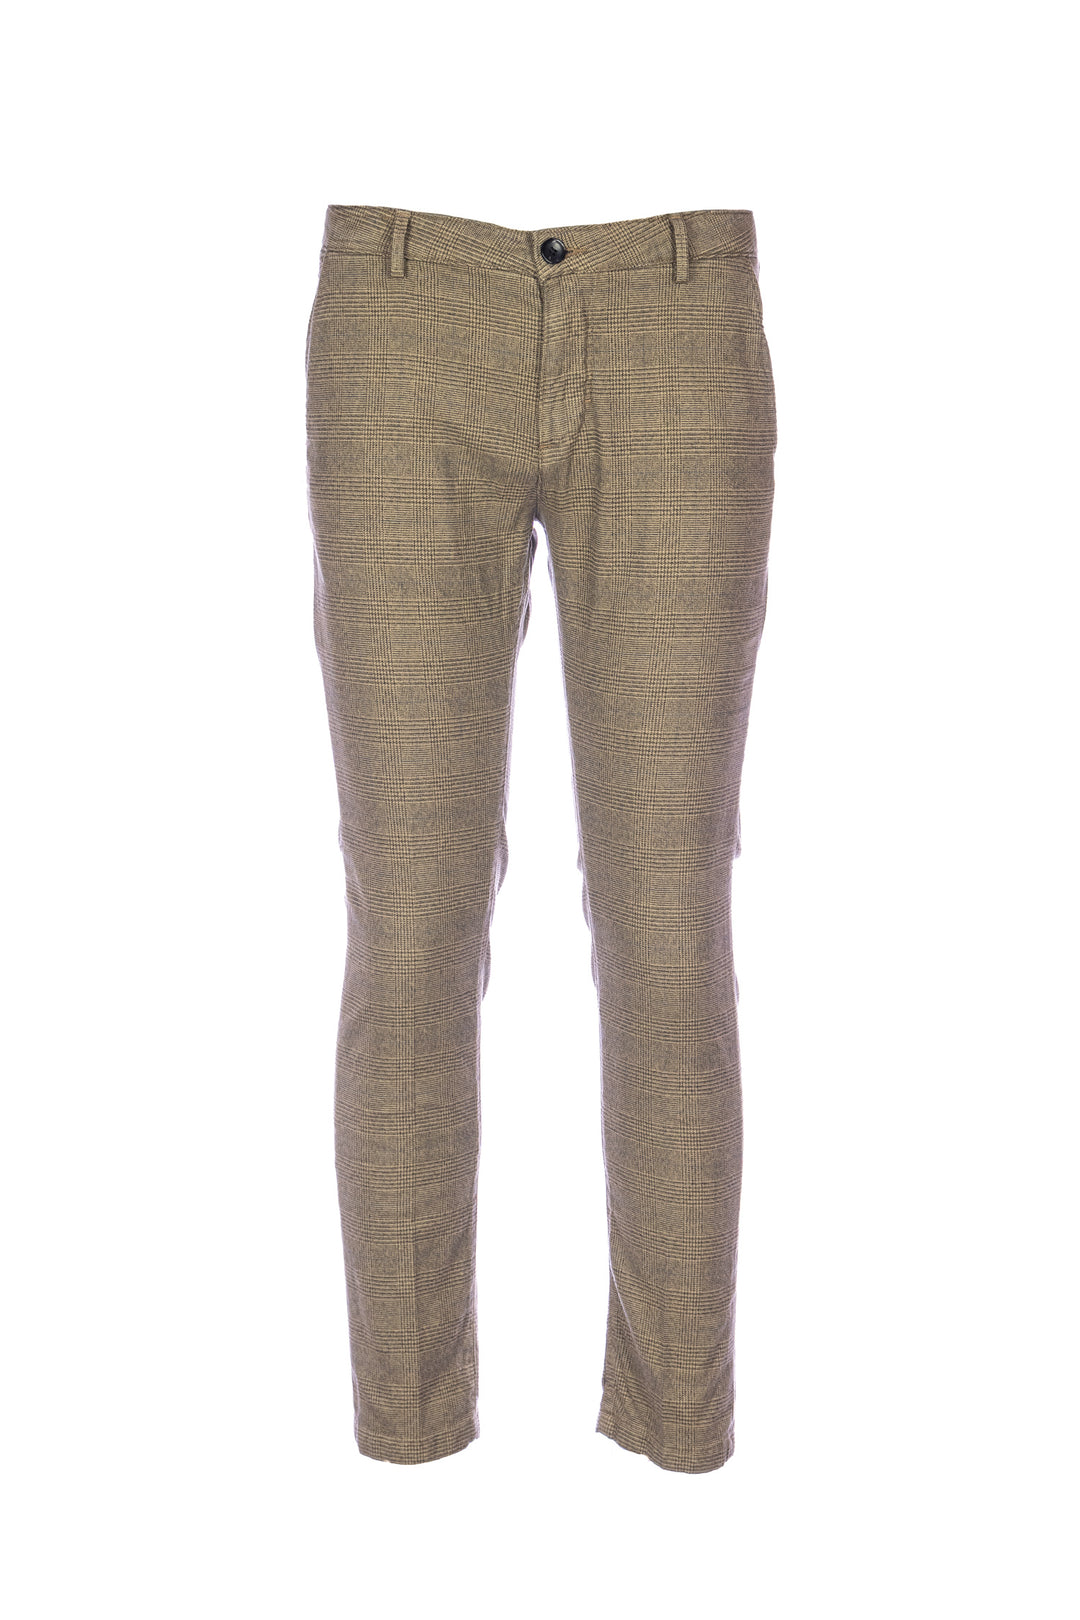 YAN SIMMON Pantalone cammello a quadri in cotone elasticizzato - Mancinelli 1954